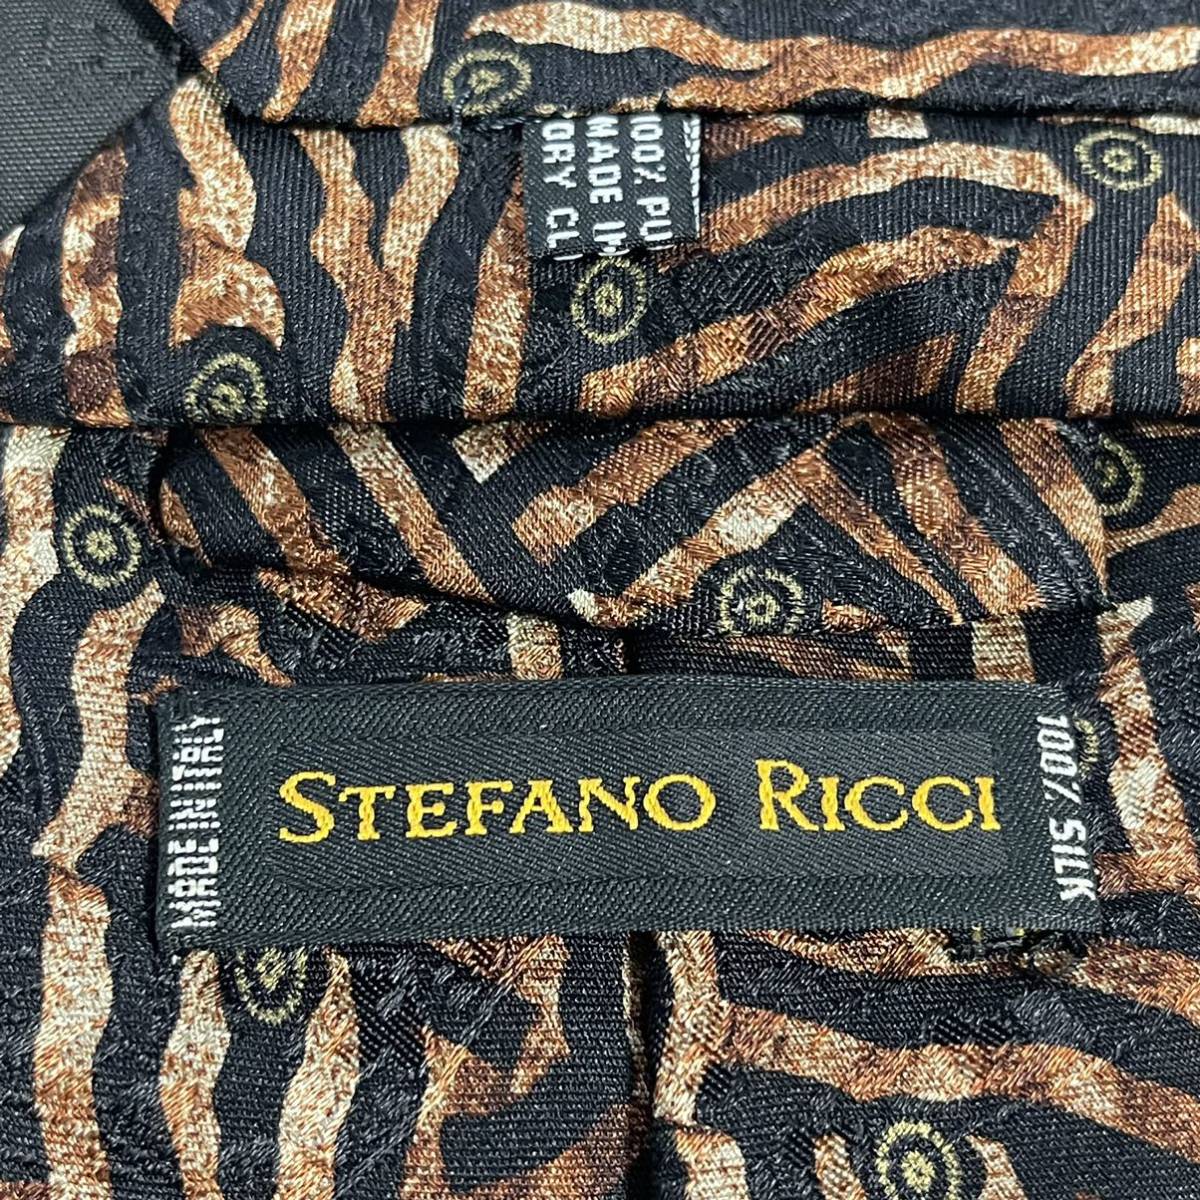 独創的 STEFANO 黒ブラウン模様ネクタイ RICCI【ステファノリッチ】 ネクタイ一般